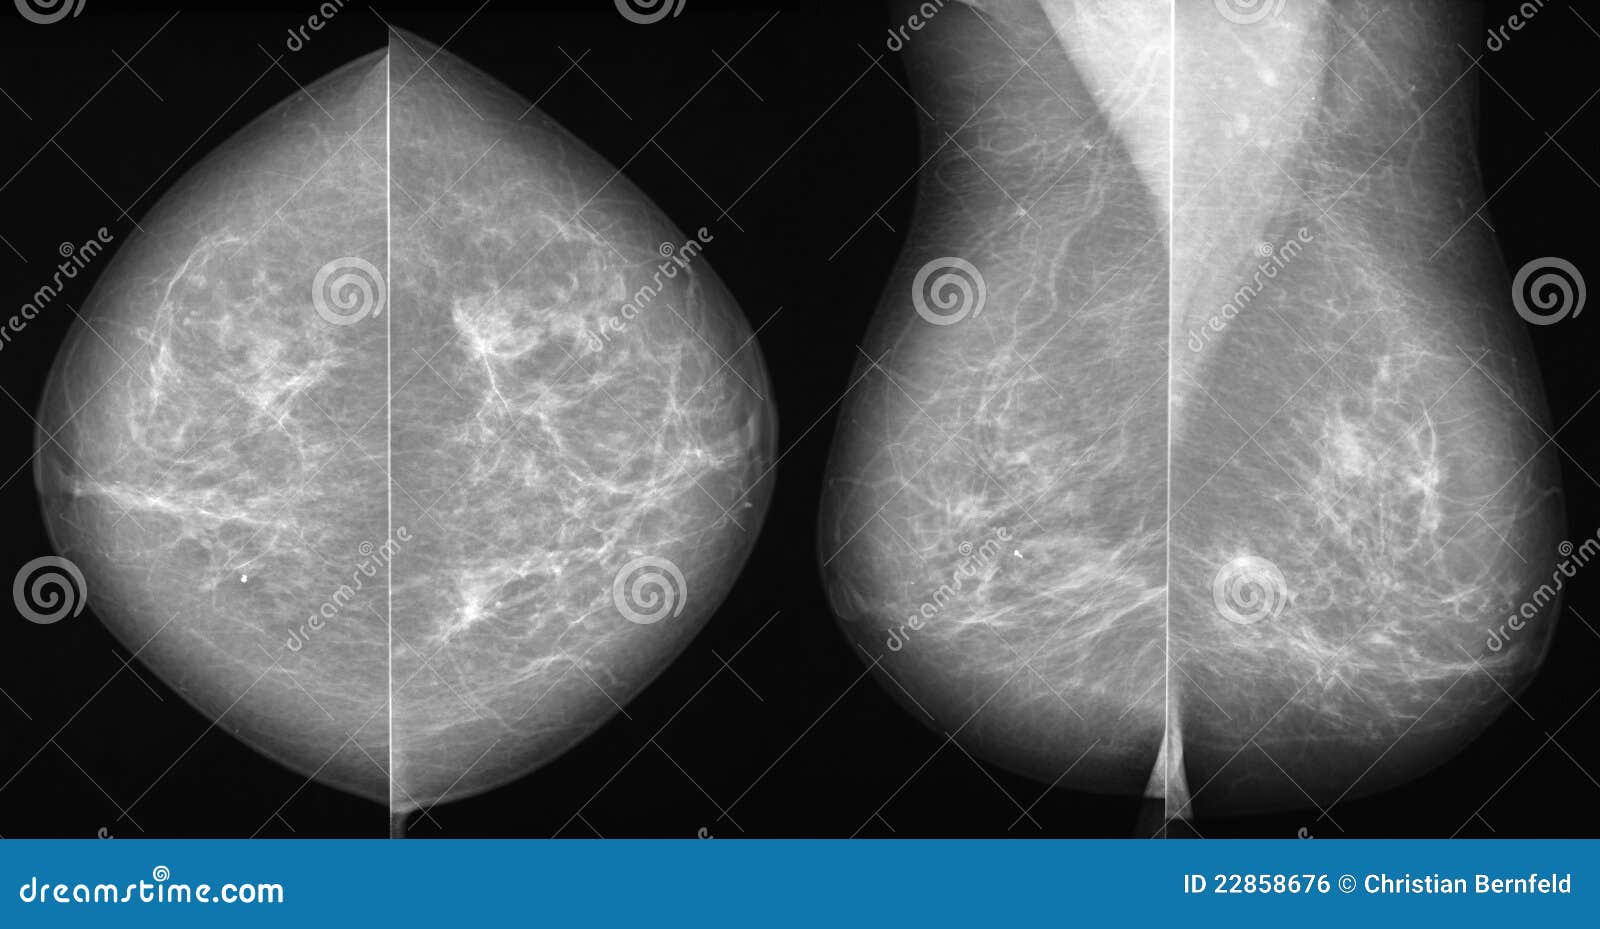 乳腺多形性小叶原位癌